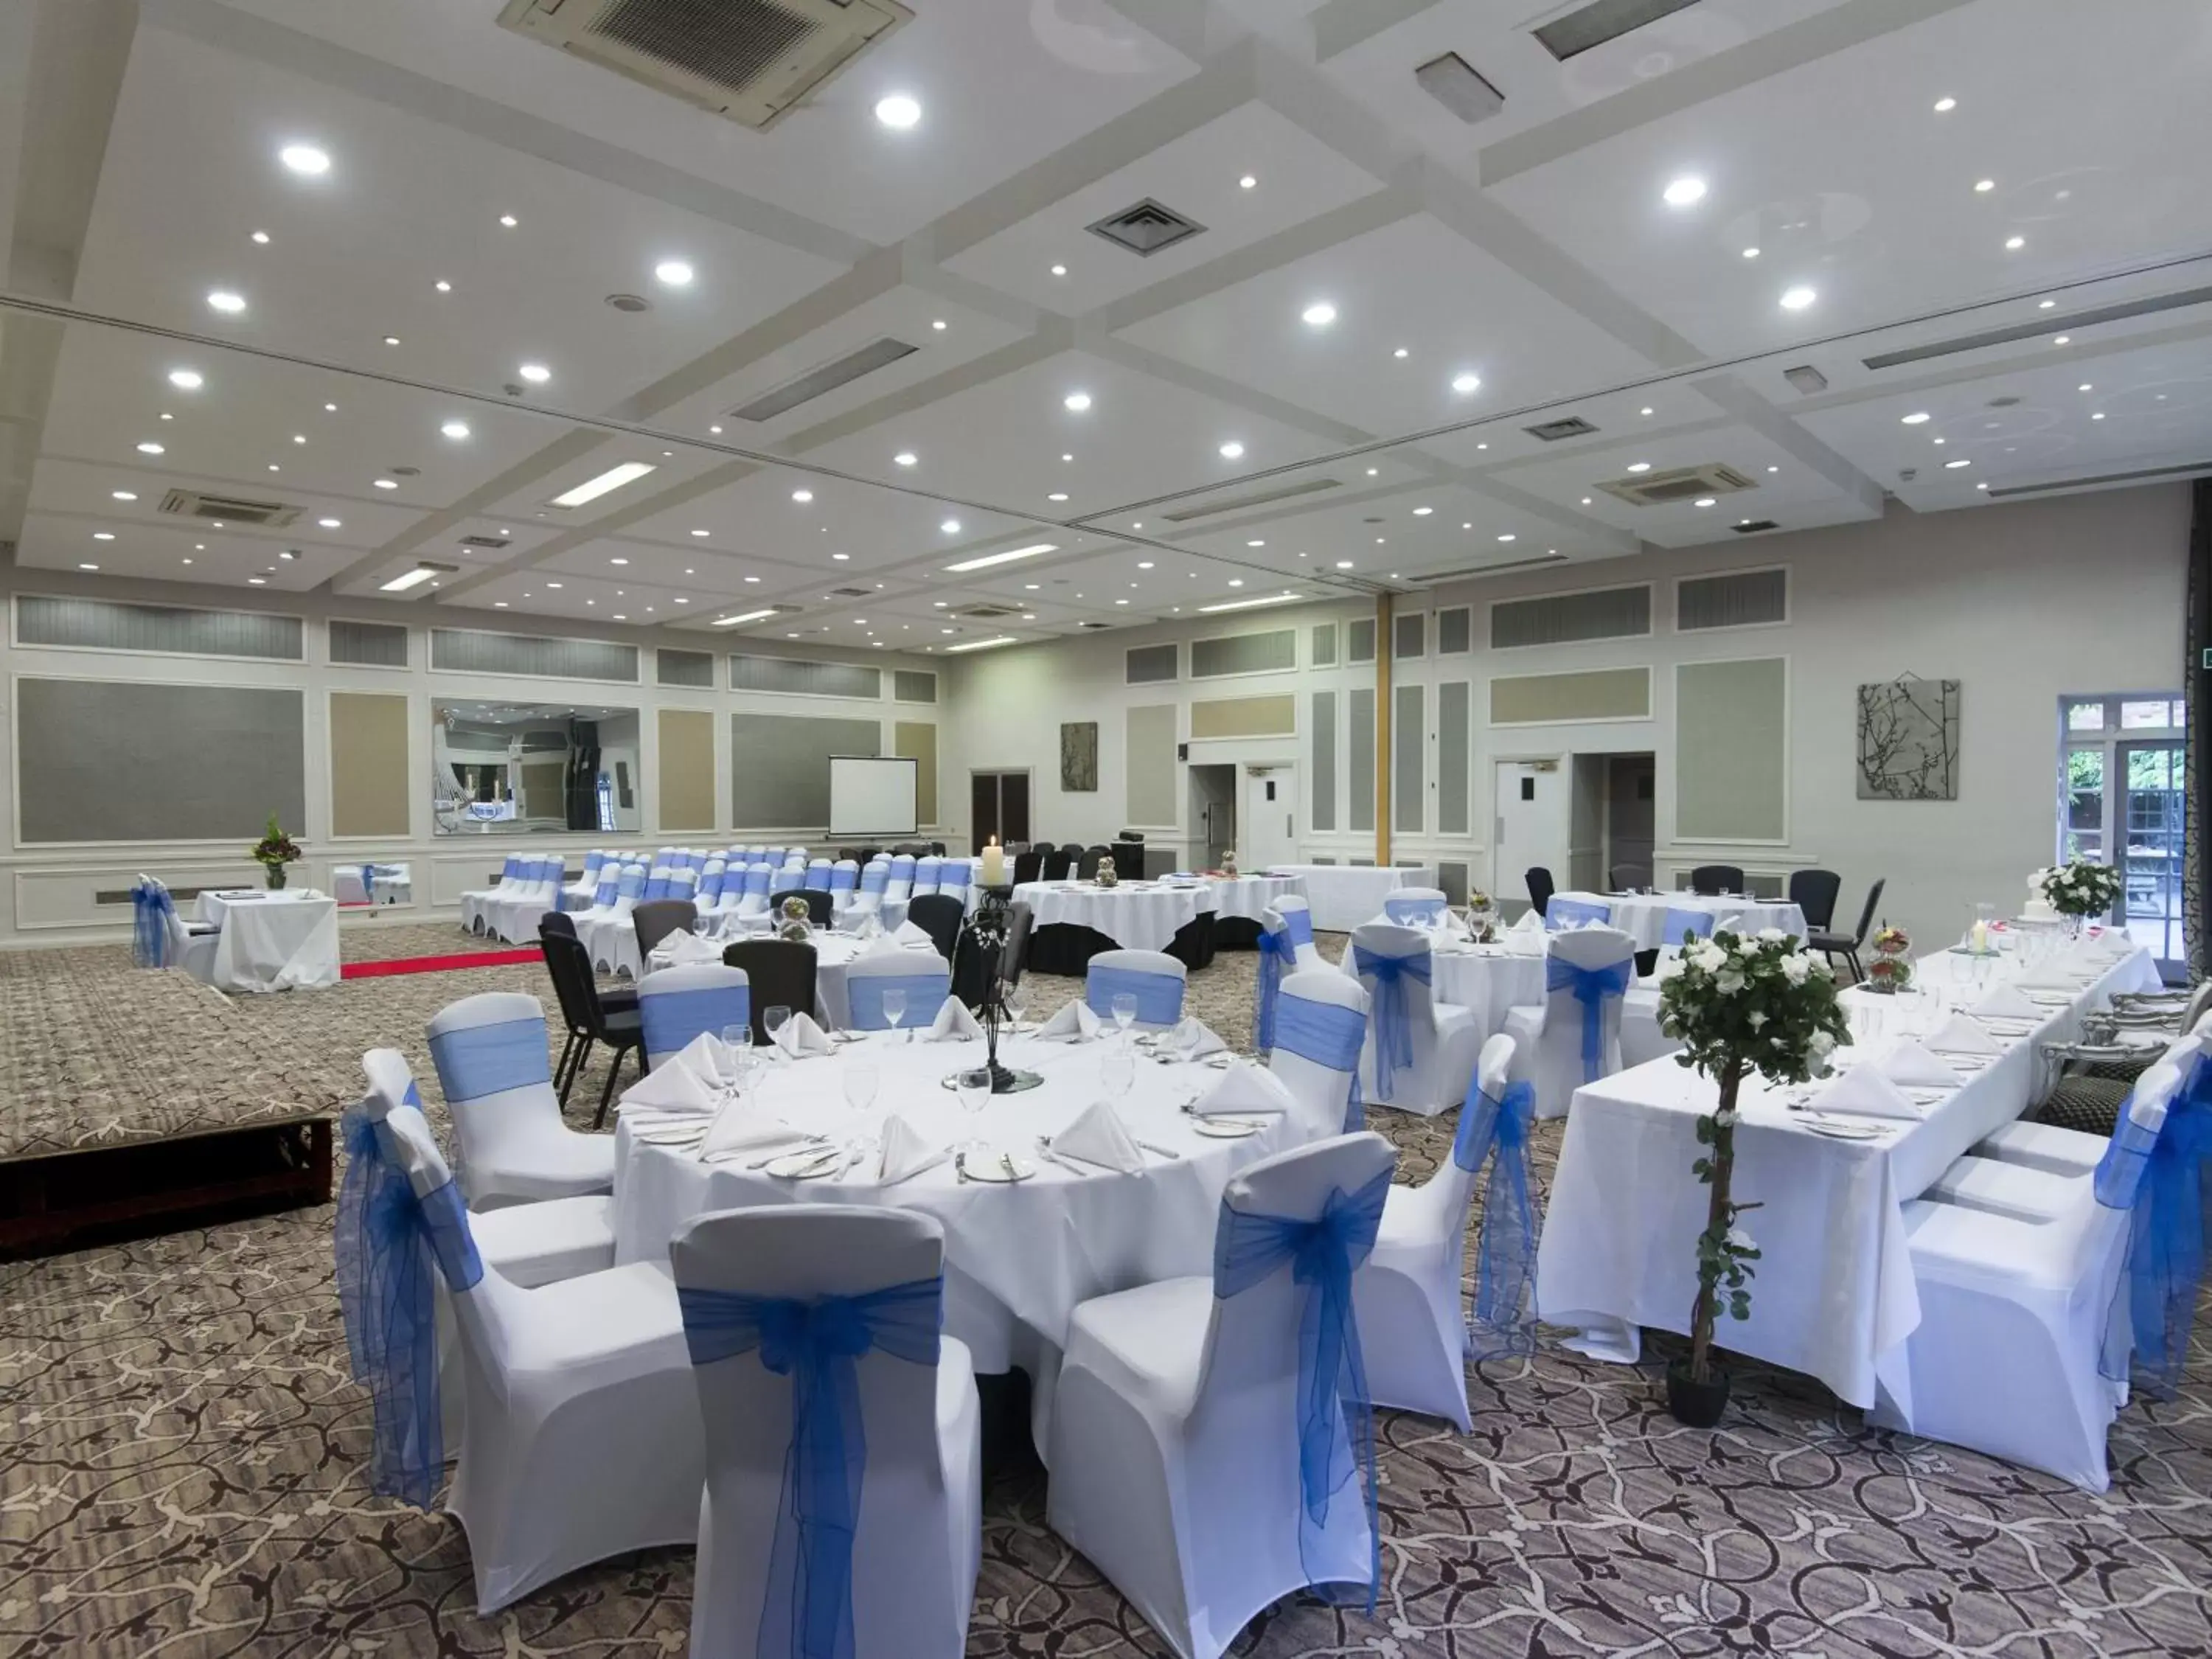 Banquet/Function facilities, Banquet Facilities in The Spread Eagle Hotel